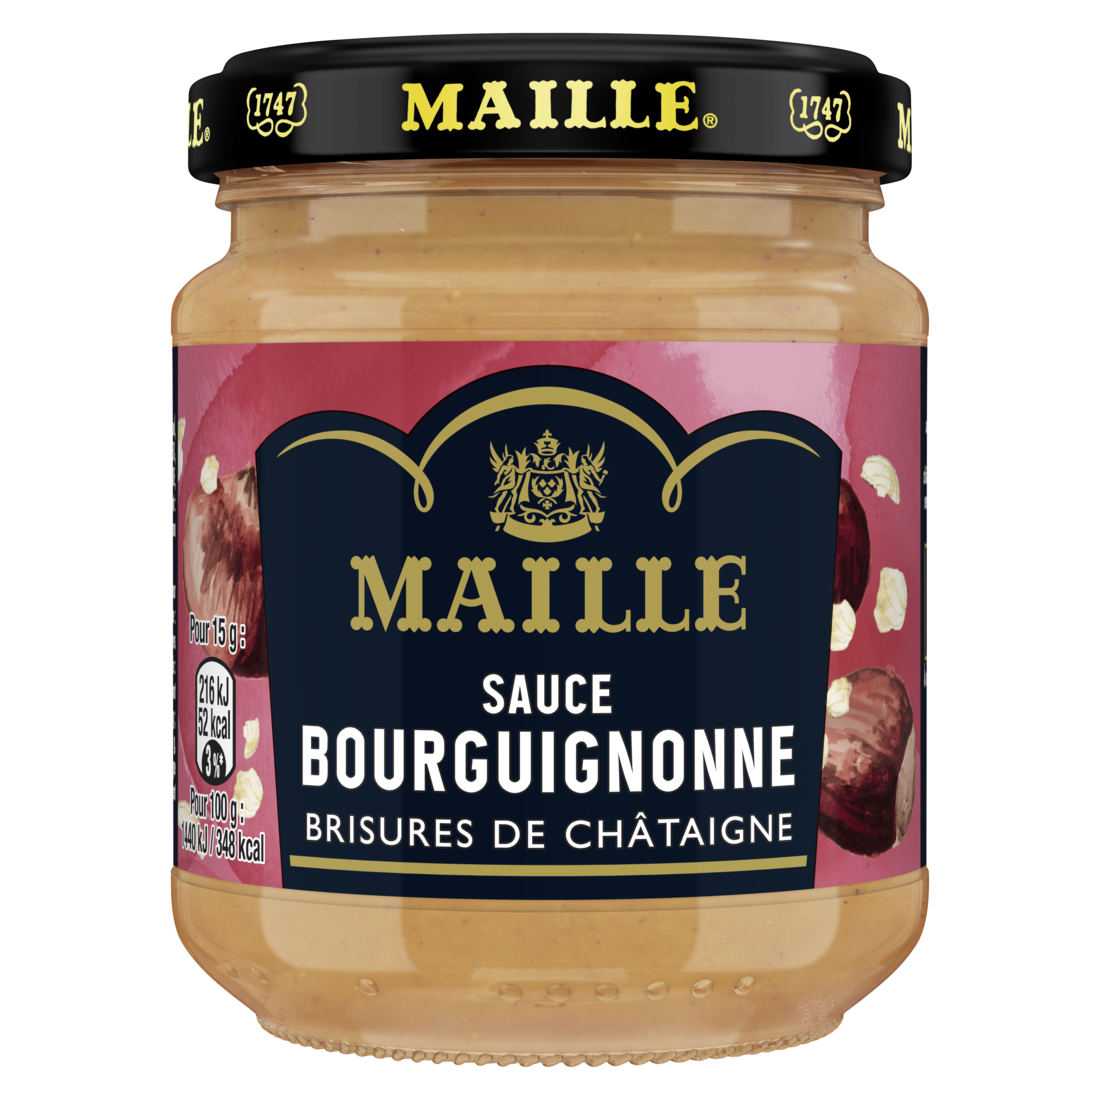 Maille Sauce Bourguignonne, Brisures de Châtaigne, 190 g front